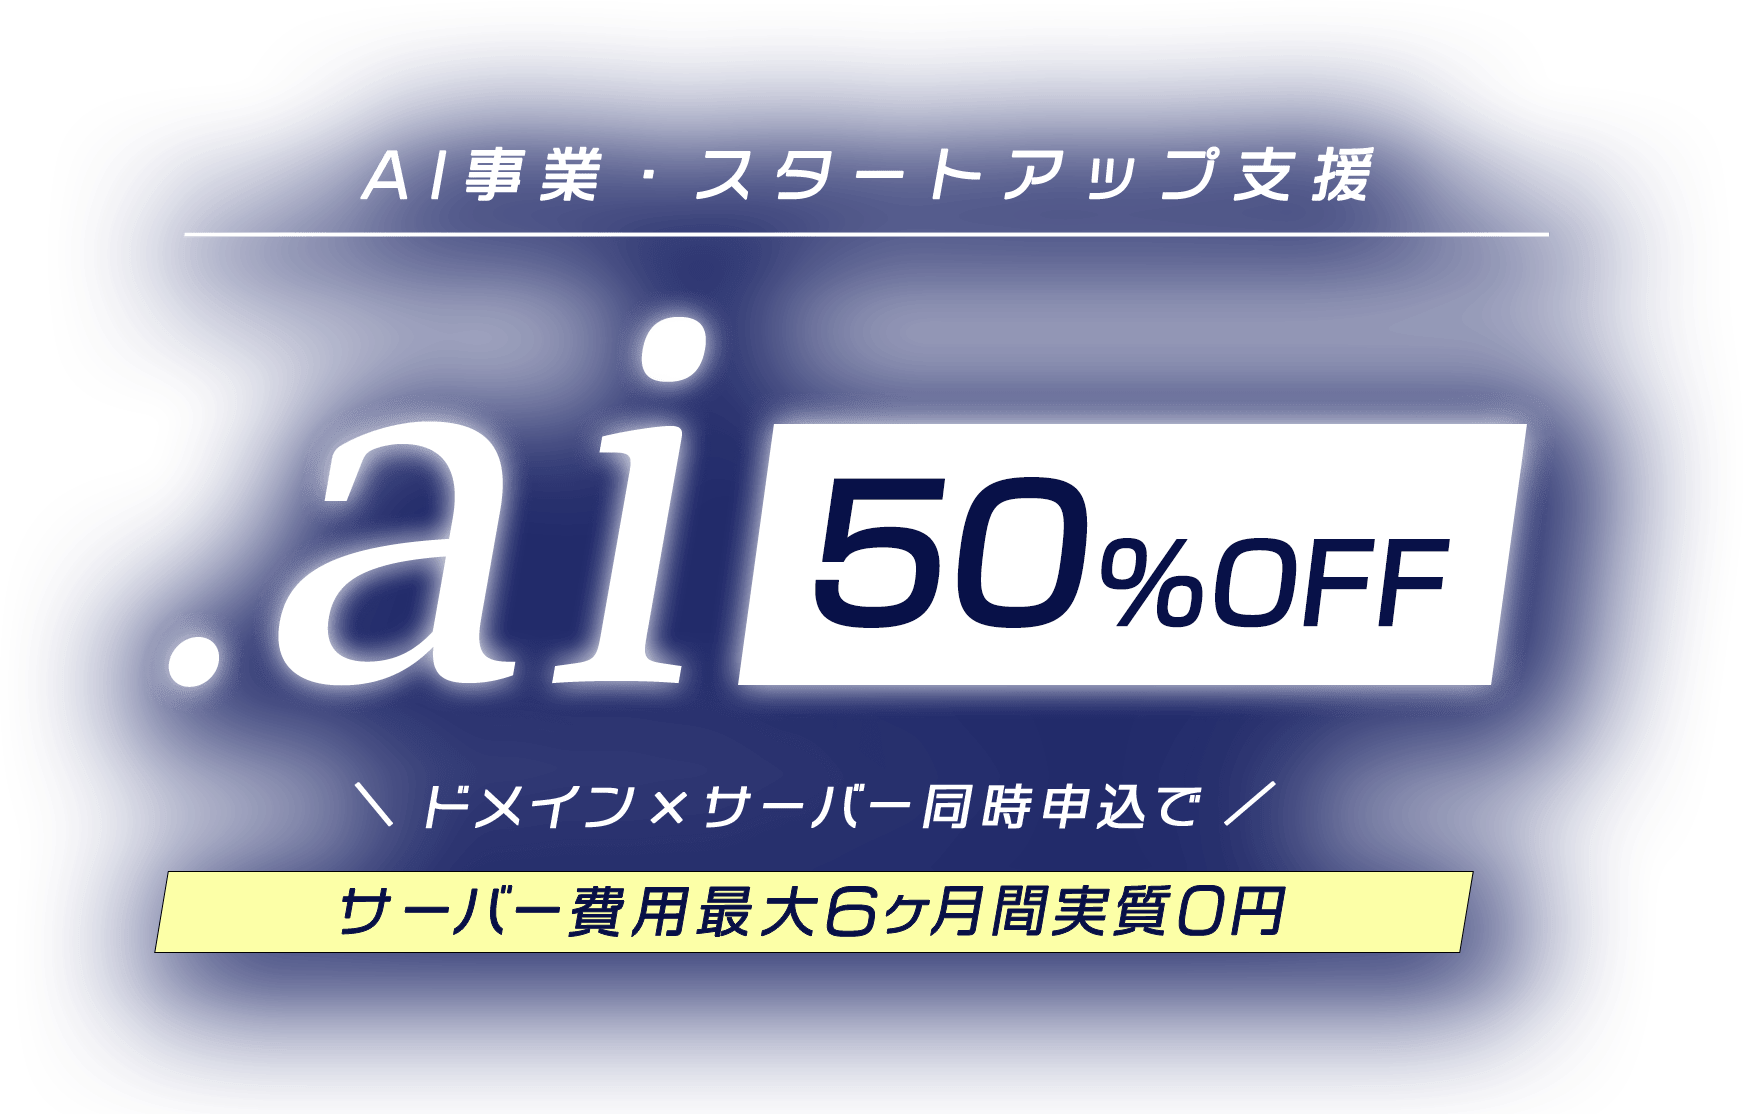 AI事業・スタートアップ支援 ドメイン・サーバー同時申し込みでサーバー費用最大6ヶ月間実質0円